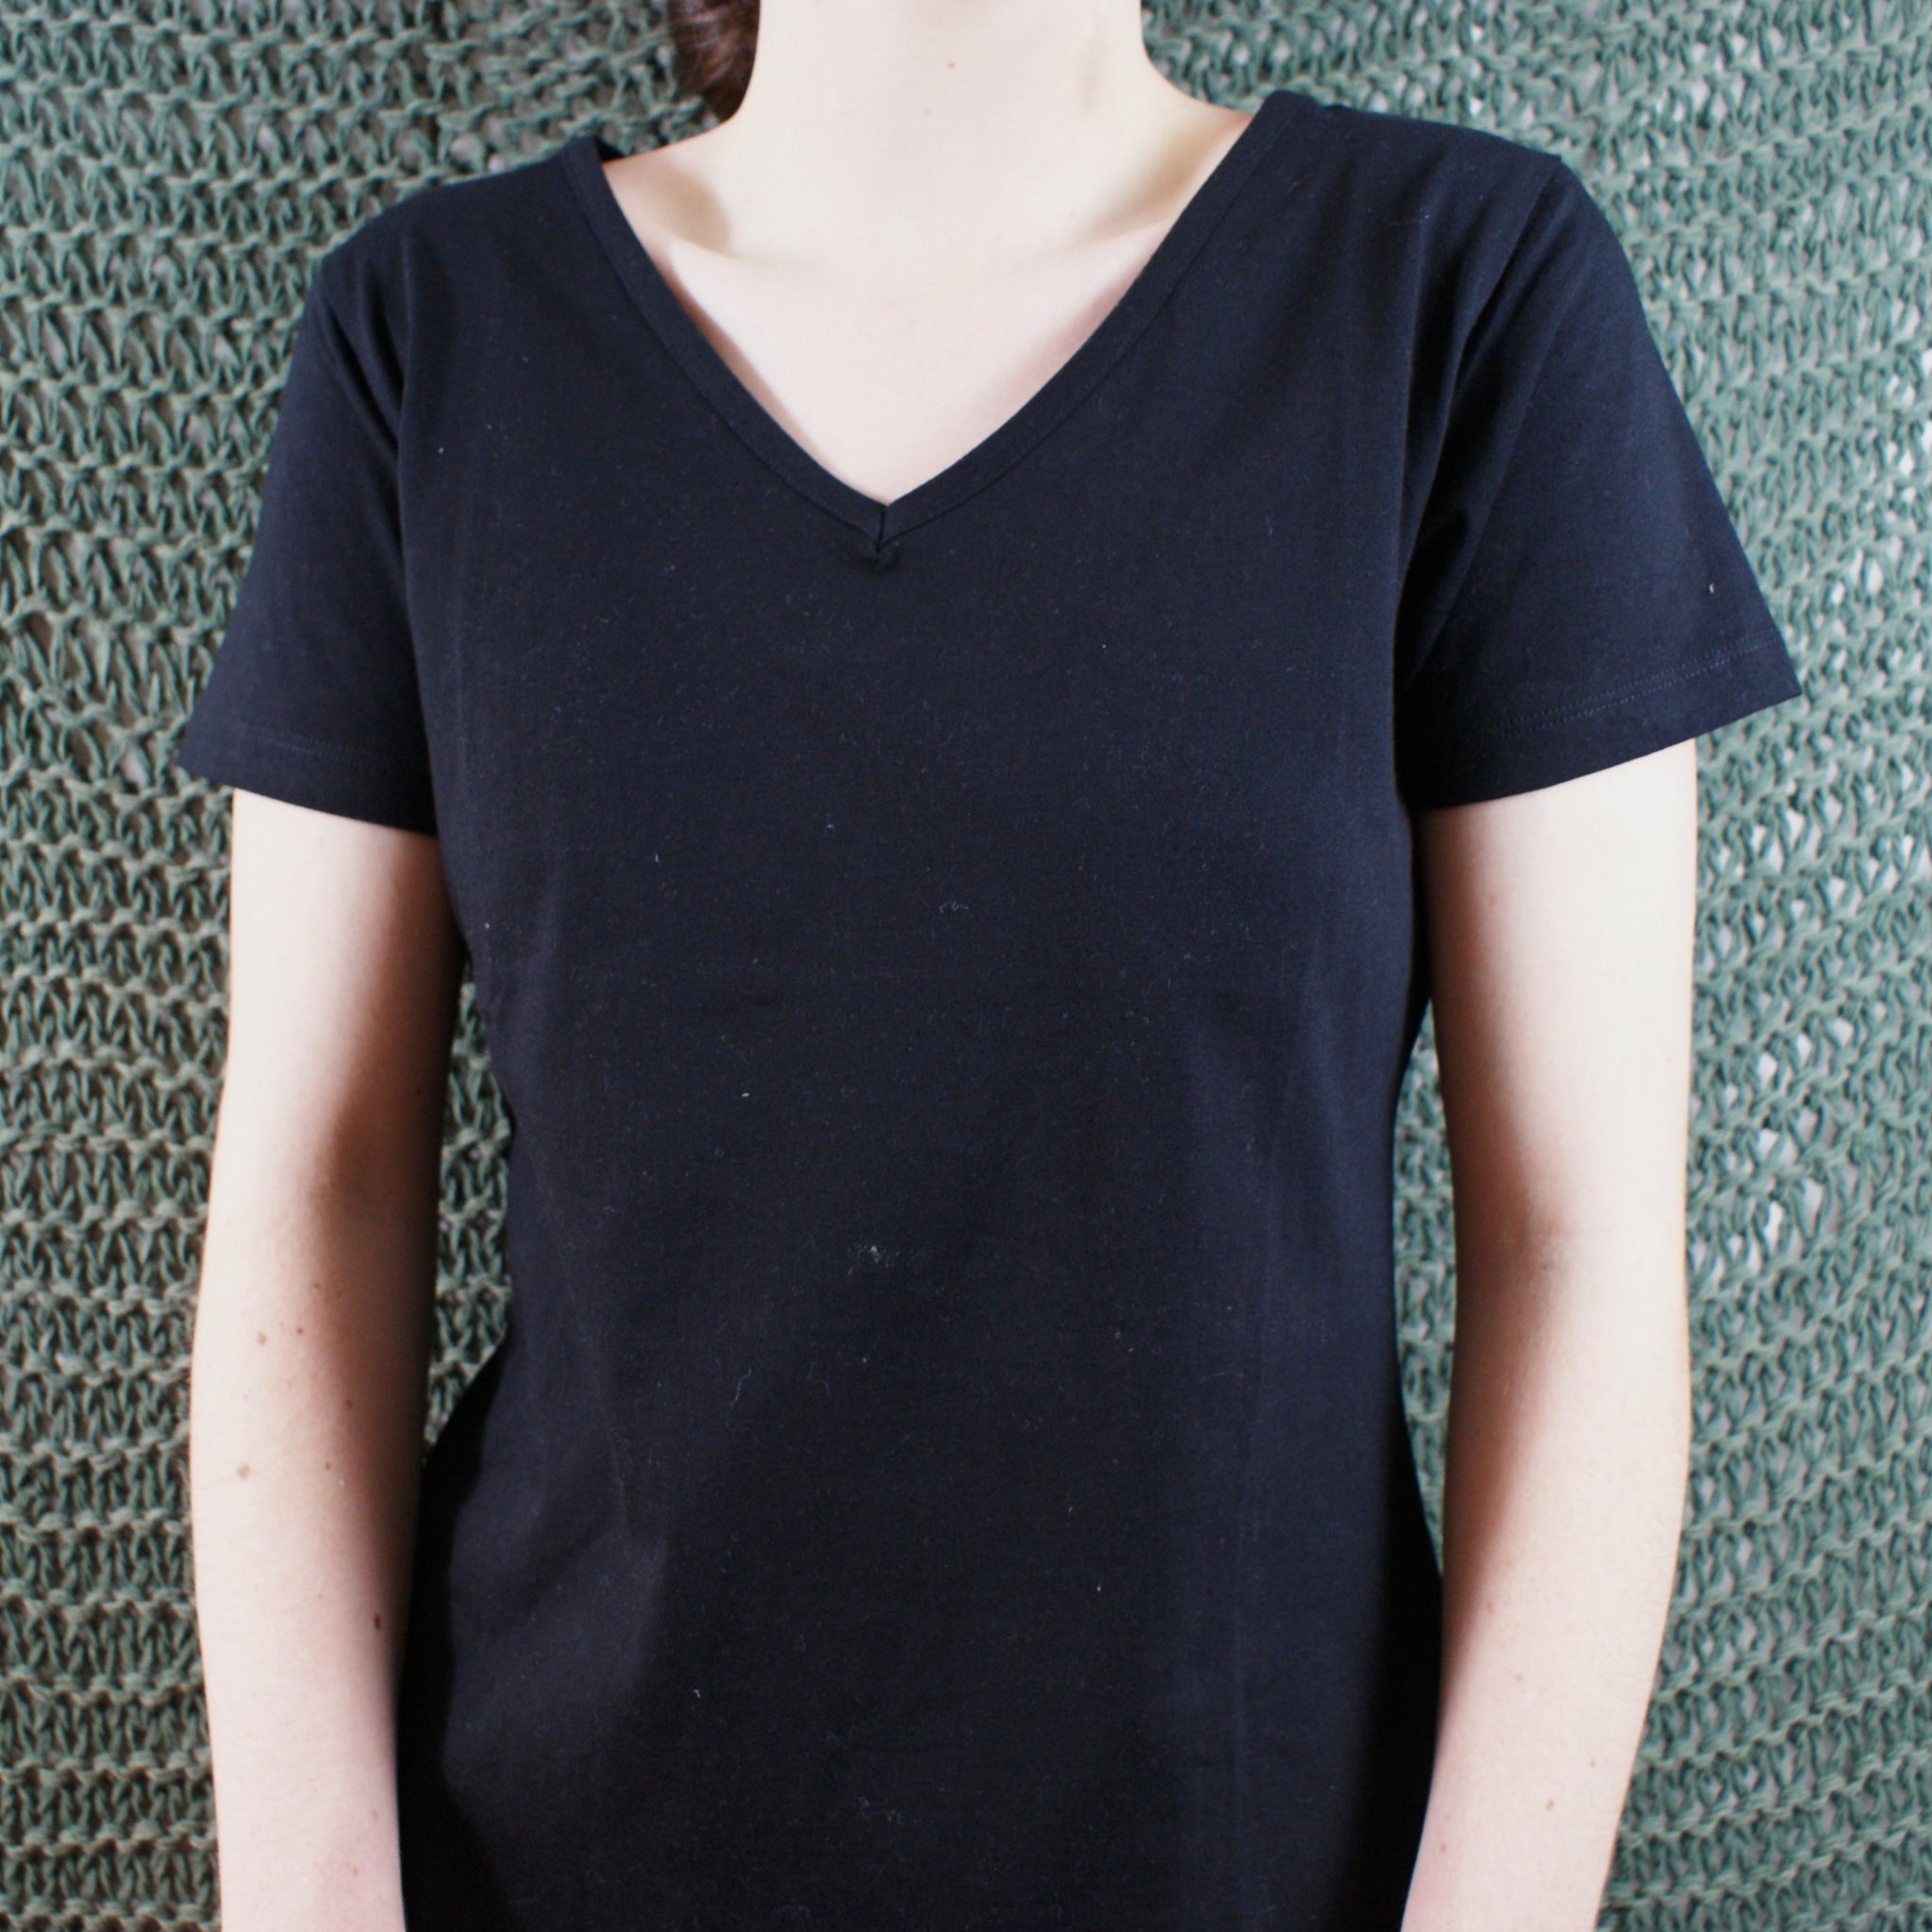 Fairtrade Ethical V-Neck Women's T-Shirt Black